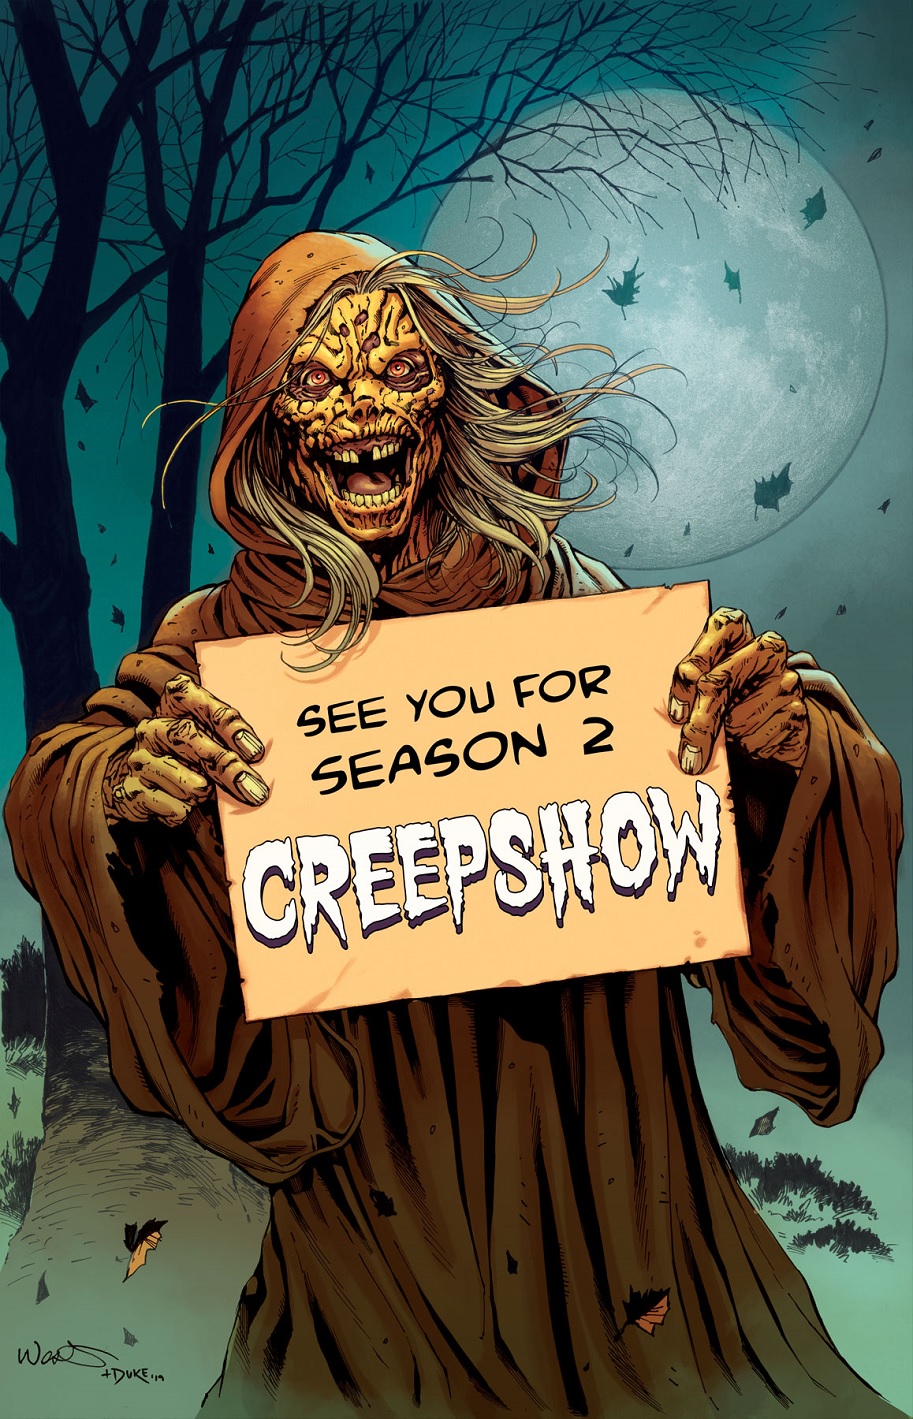 Creepshow season 2